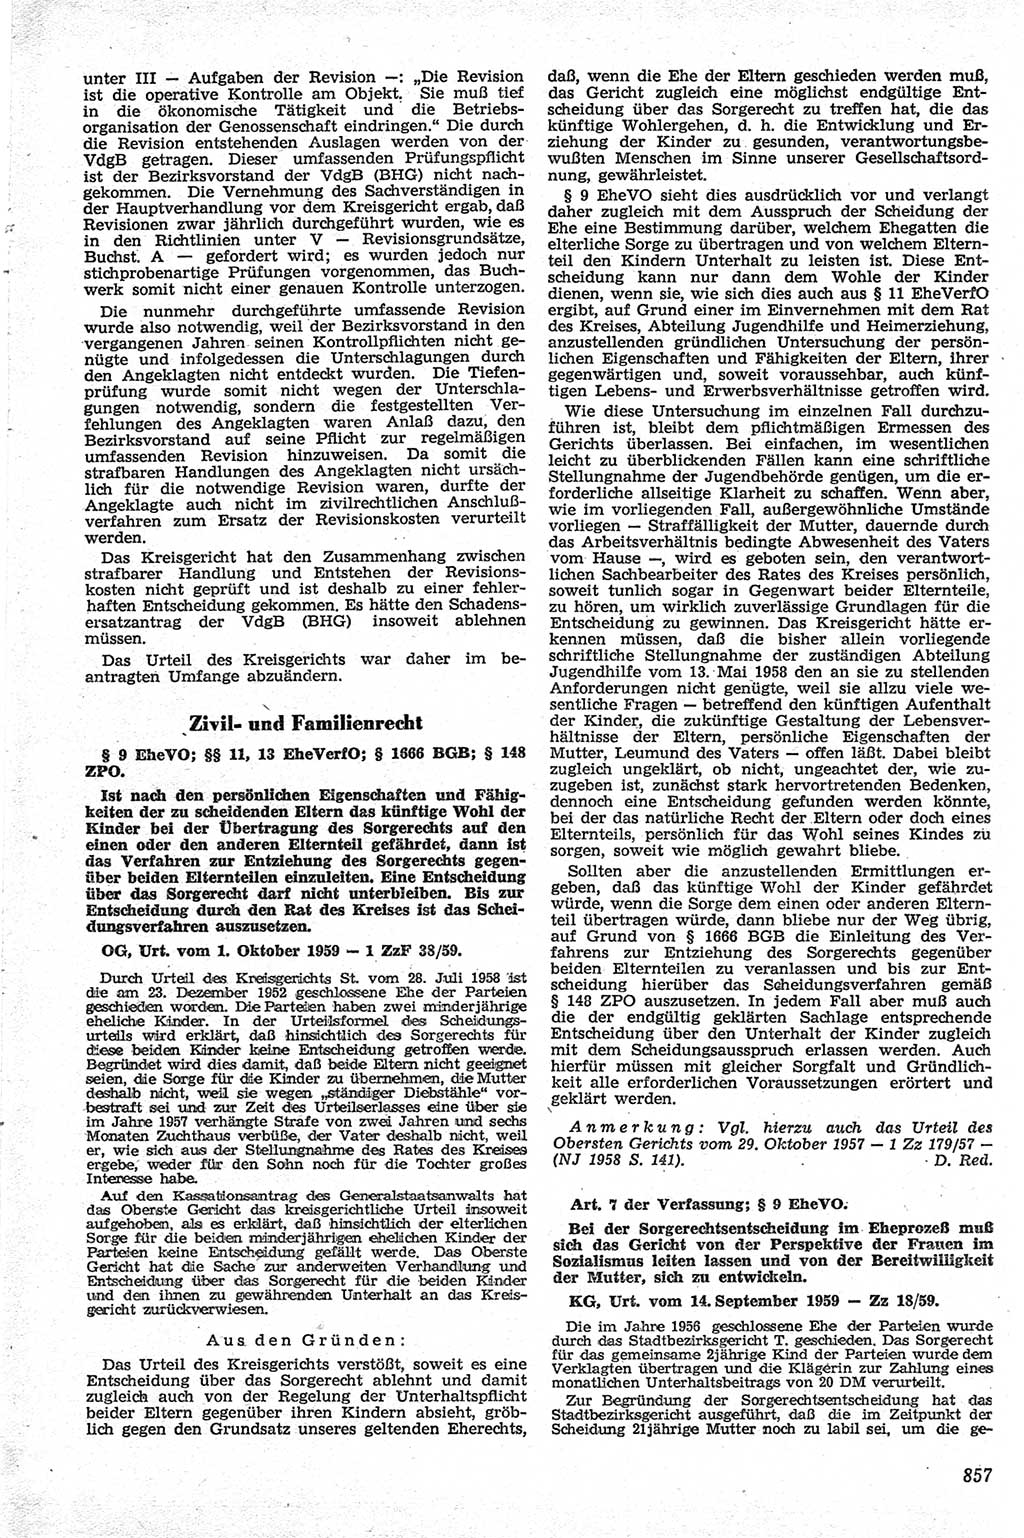 Neue Justiz (NJ), Zeitschrift für Recht und Rechtswissenschaft [Deutsche Demokratische Republik (DDR)], 13. Jahrgang 1959, Seite 857 (NJ DDR 1959, S. 857)